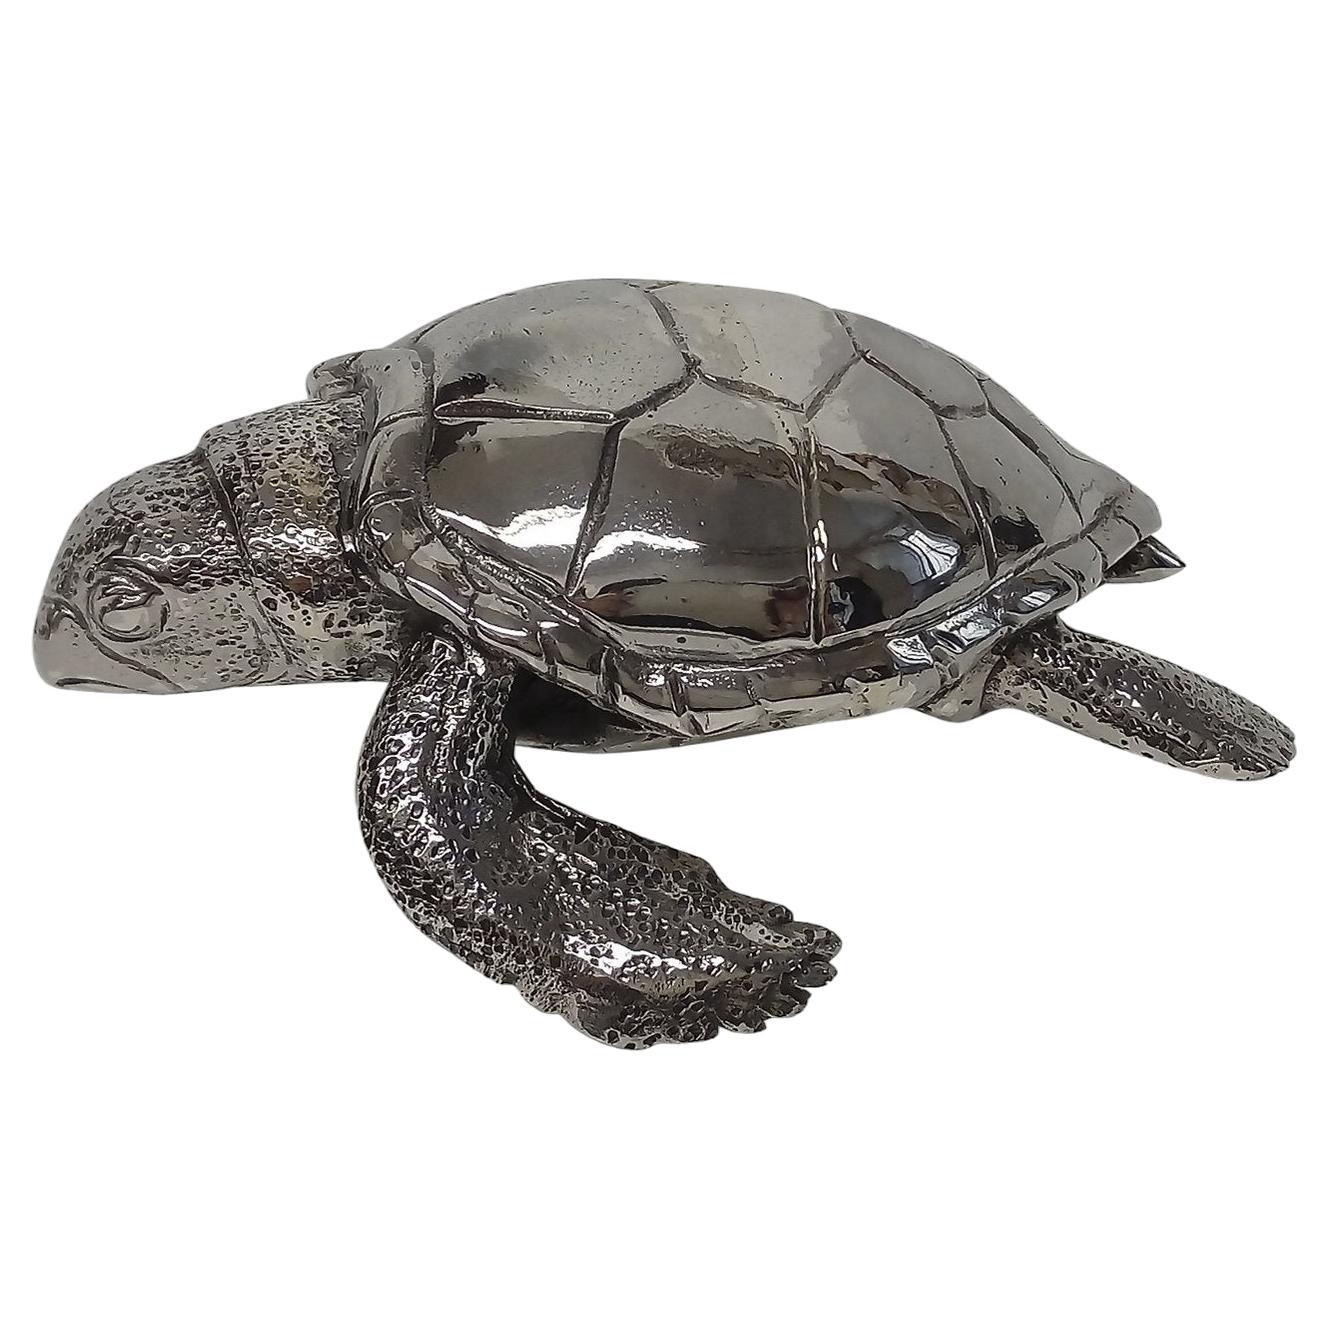 Sea Turtle Ornament For Sale